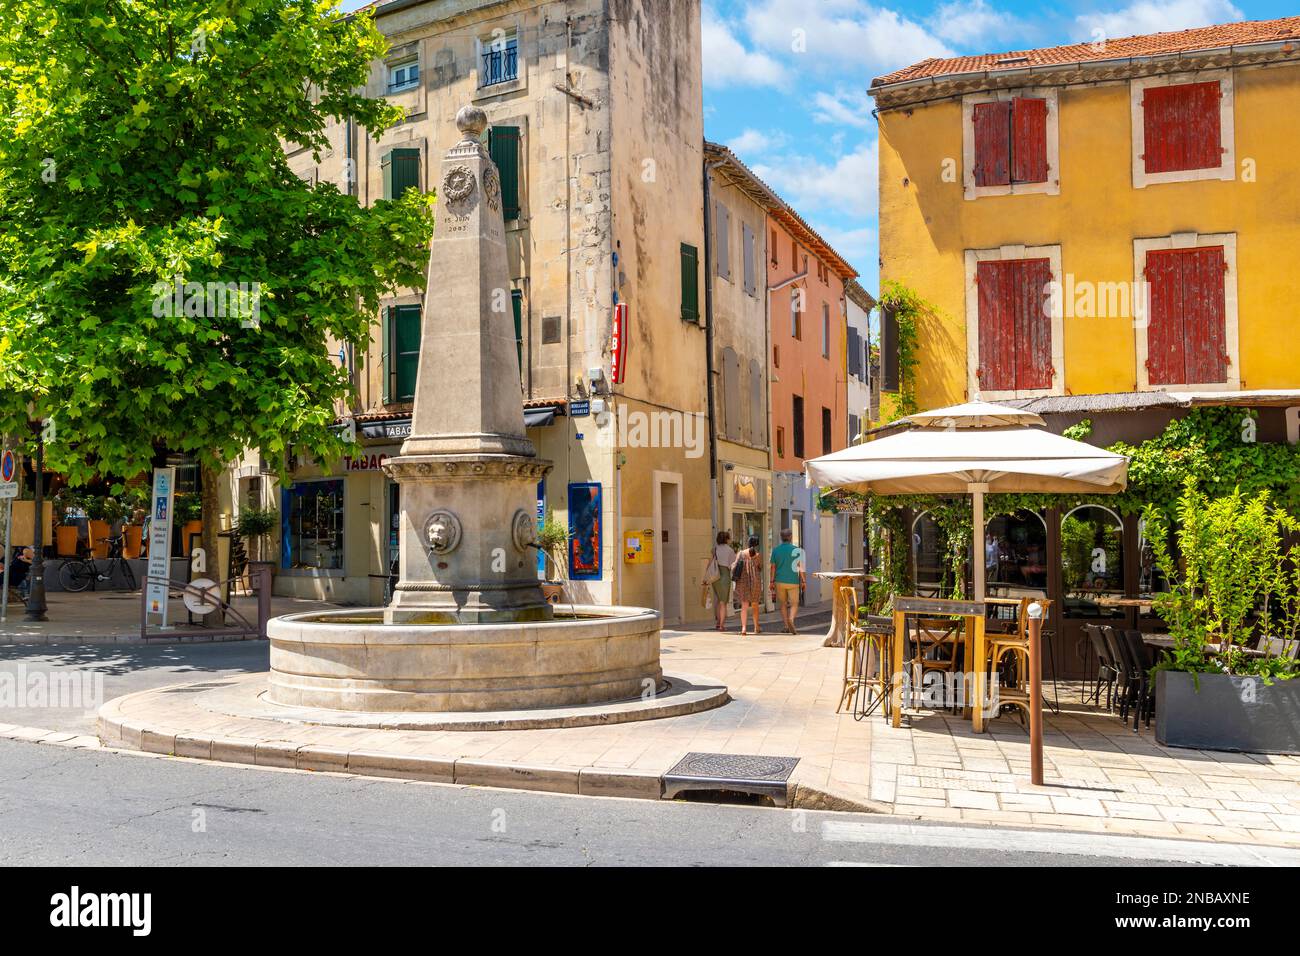 Una fontana con obelisco nel centro storico medievale della città idilliaca di Saint-Remy-de-Provence, nella regione Provenza Costa Azzurra della Francia meridionale Foto Stock